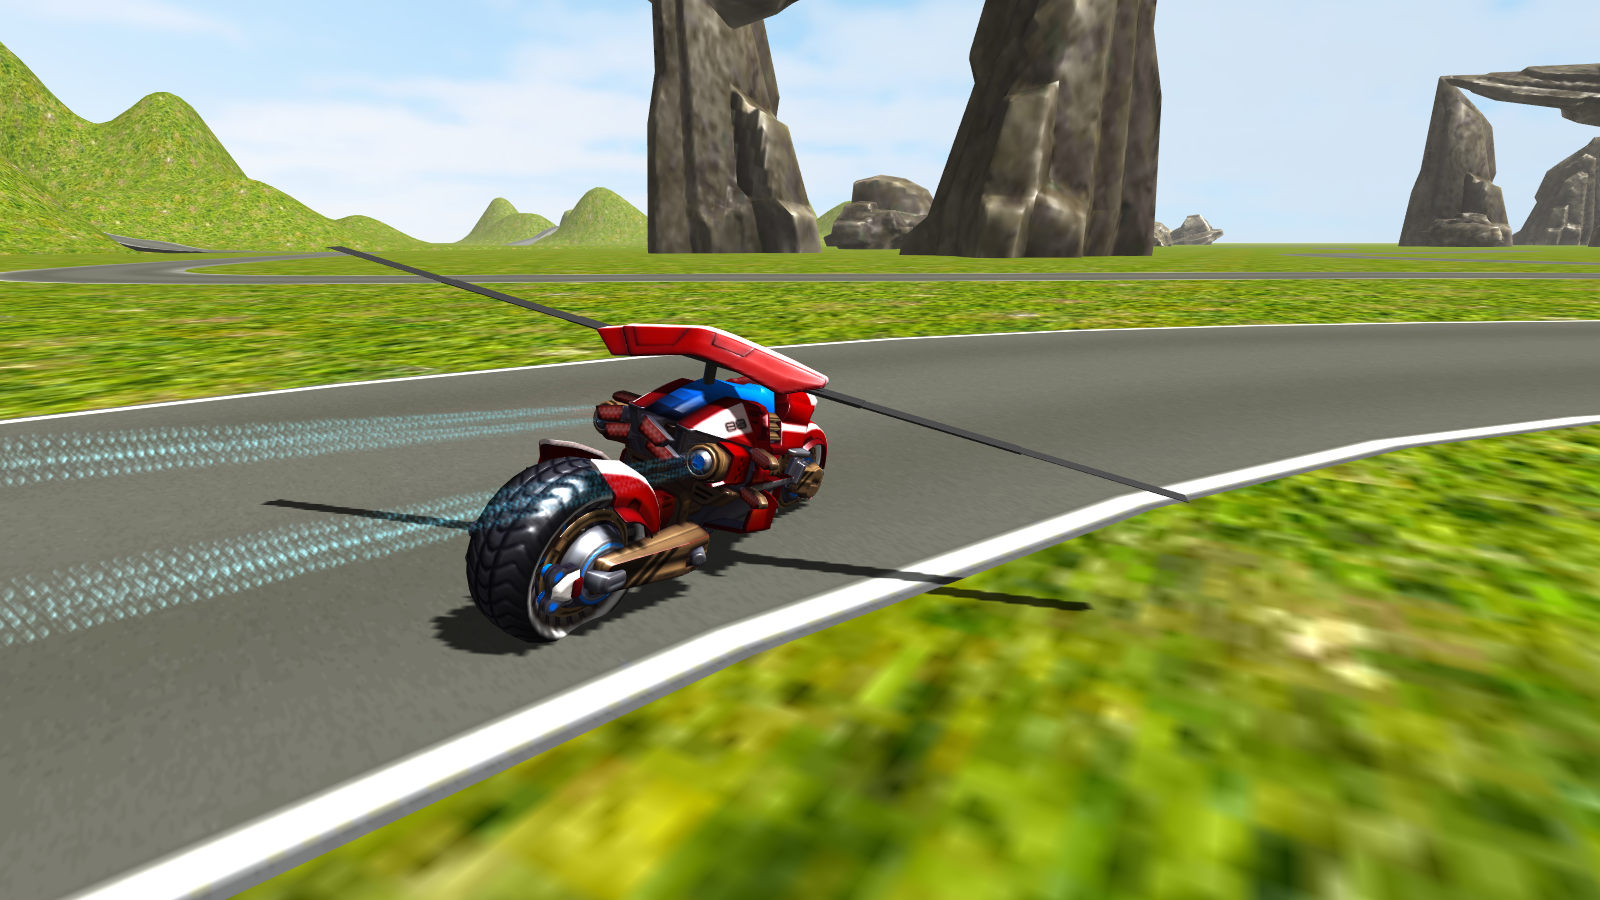 Screenshot 1 of Motocicletta in elicottero volante 1